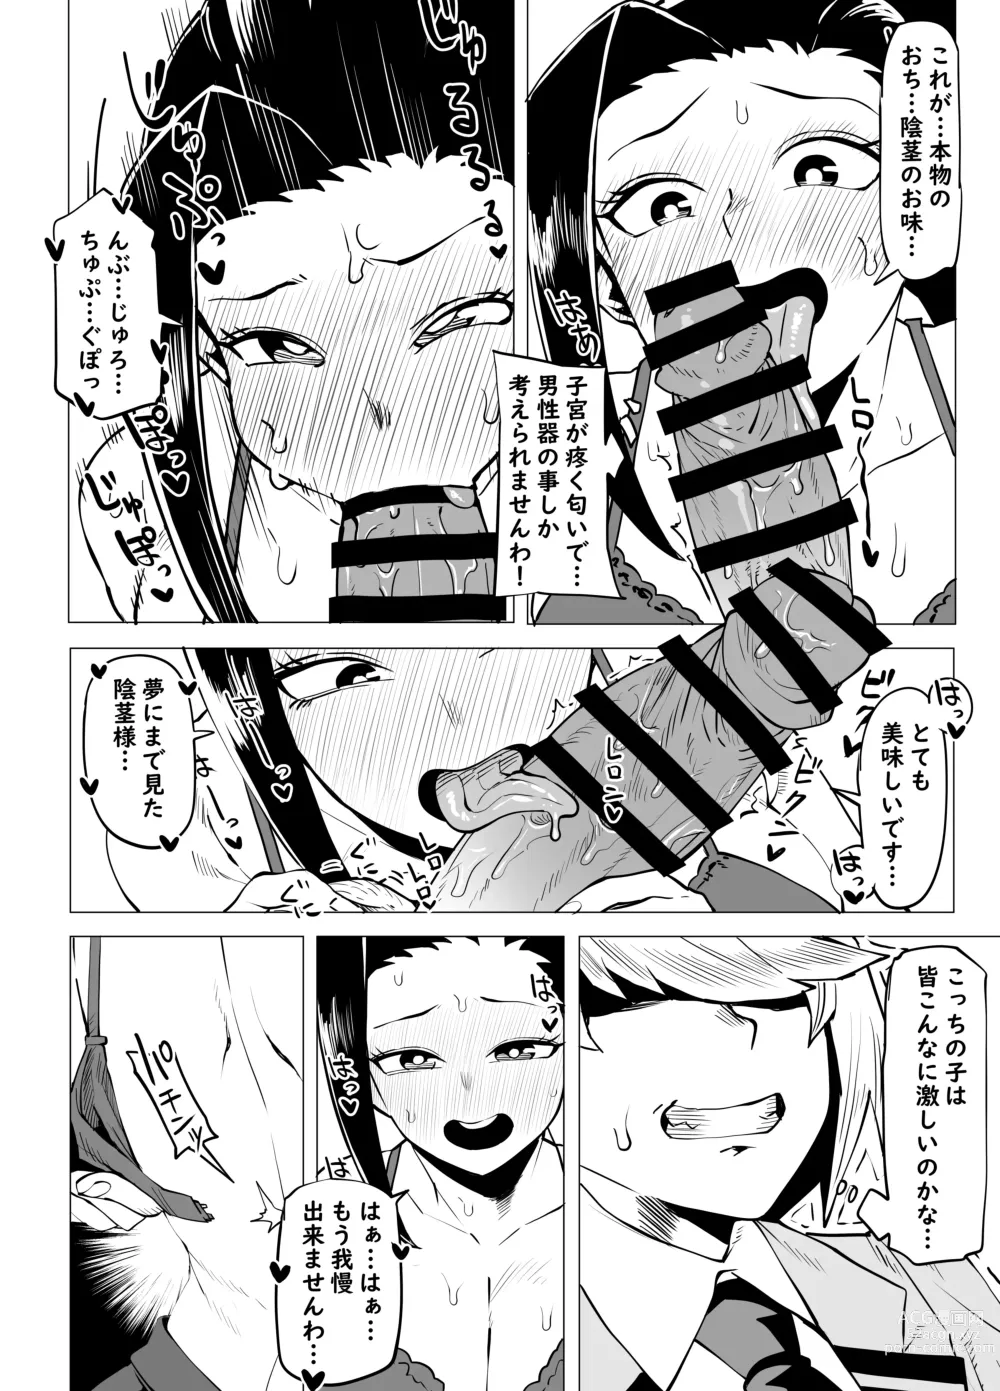 Page 3 of doujinshi Teisou Gyakuten Butsu ~Yaoyorozu no Baai~